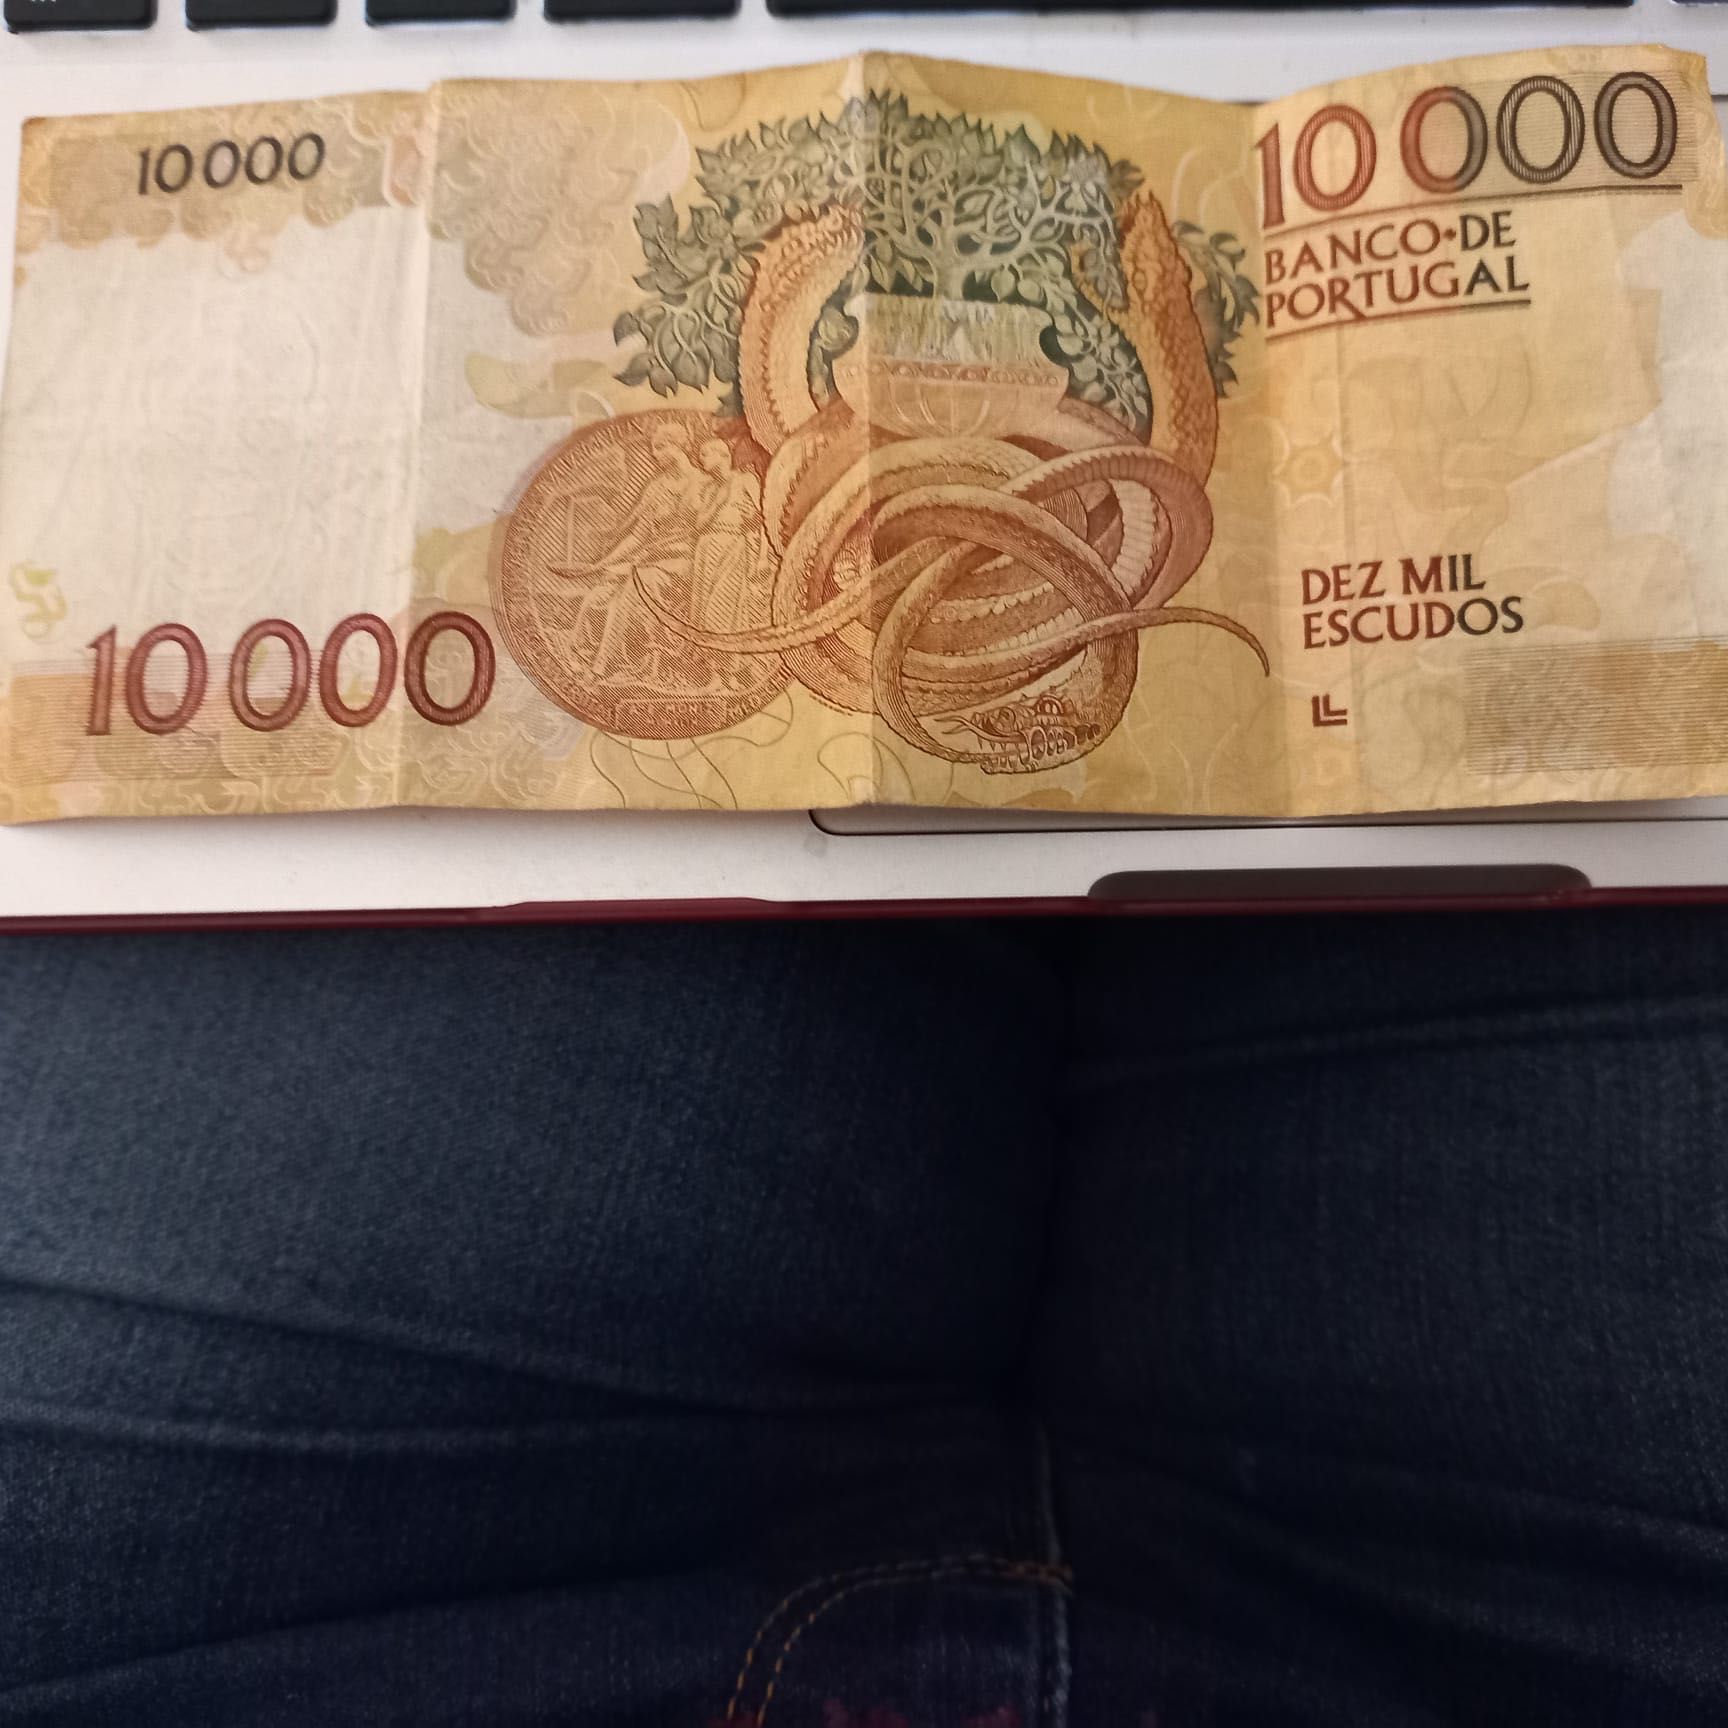 nota 10000 escudos 1989 - novo preço